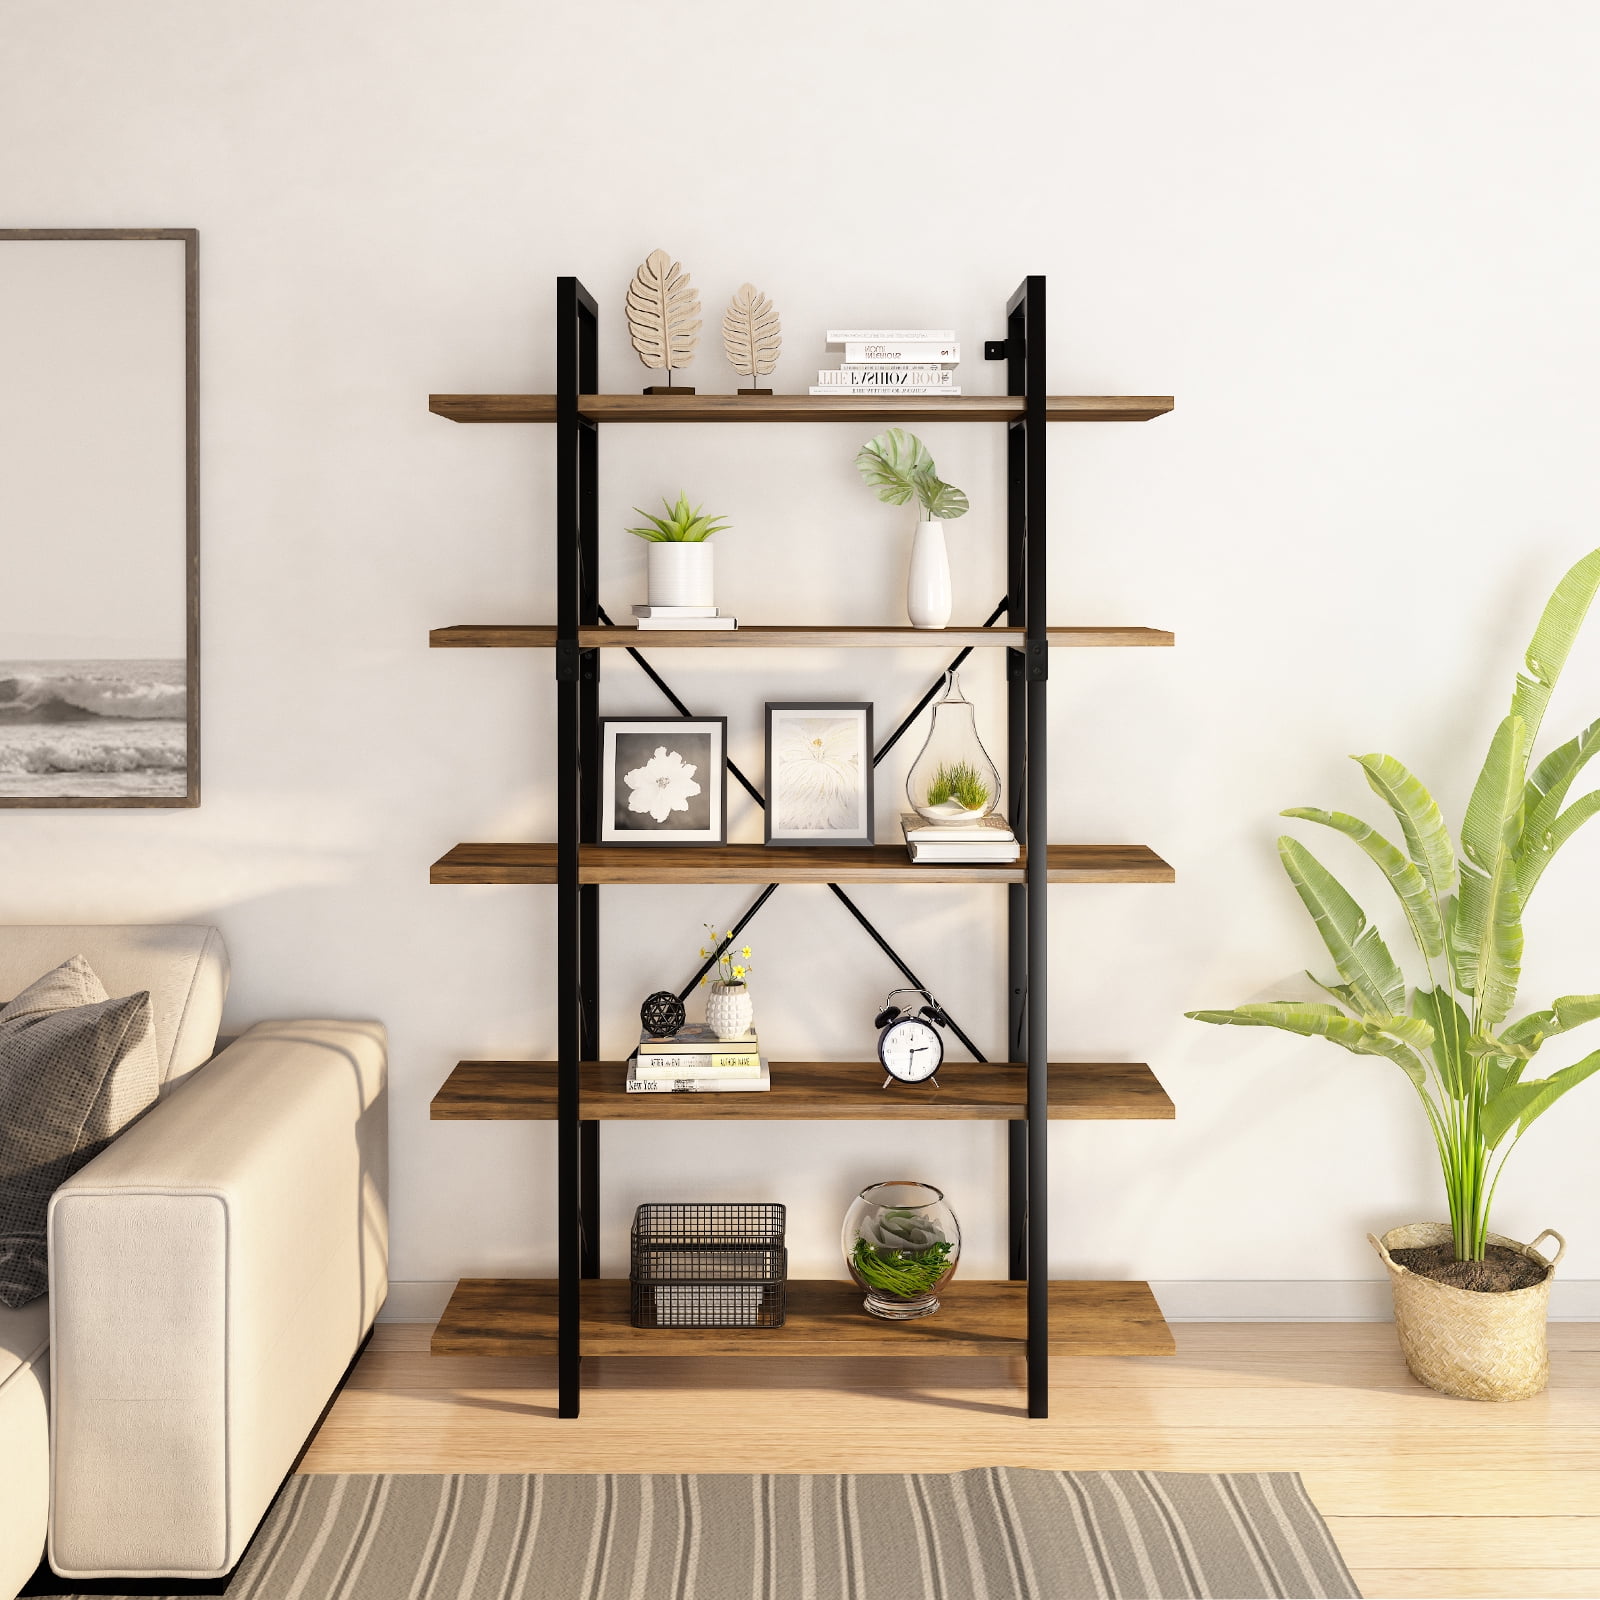 Dextrus 5-Tier Bookshelf Sturdy Wood Storage Bookcase Shelves with